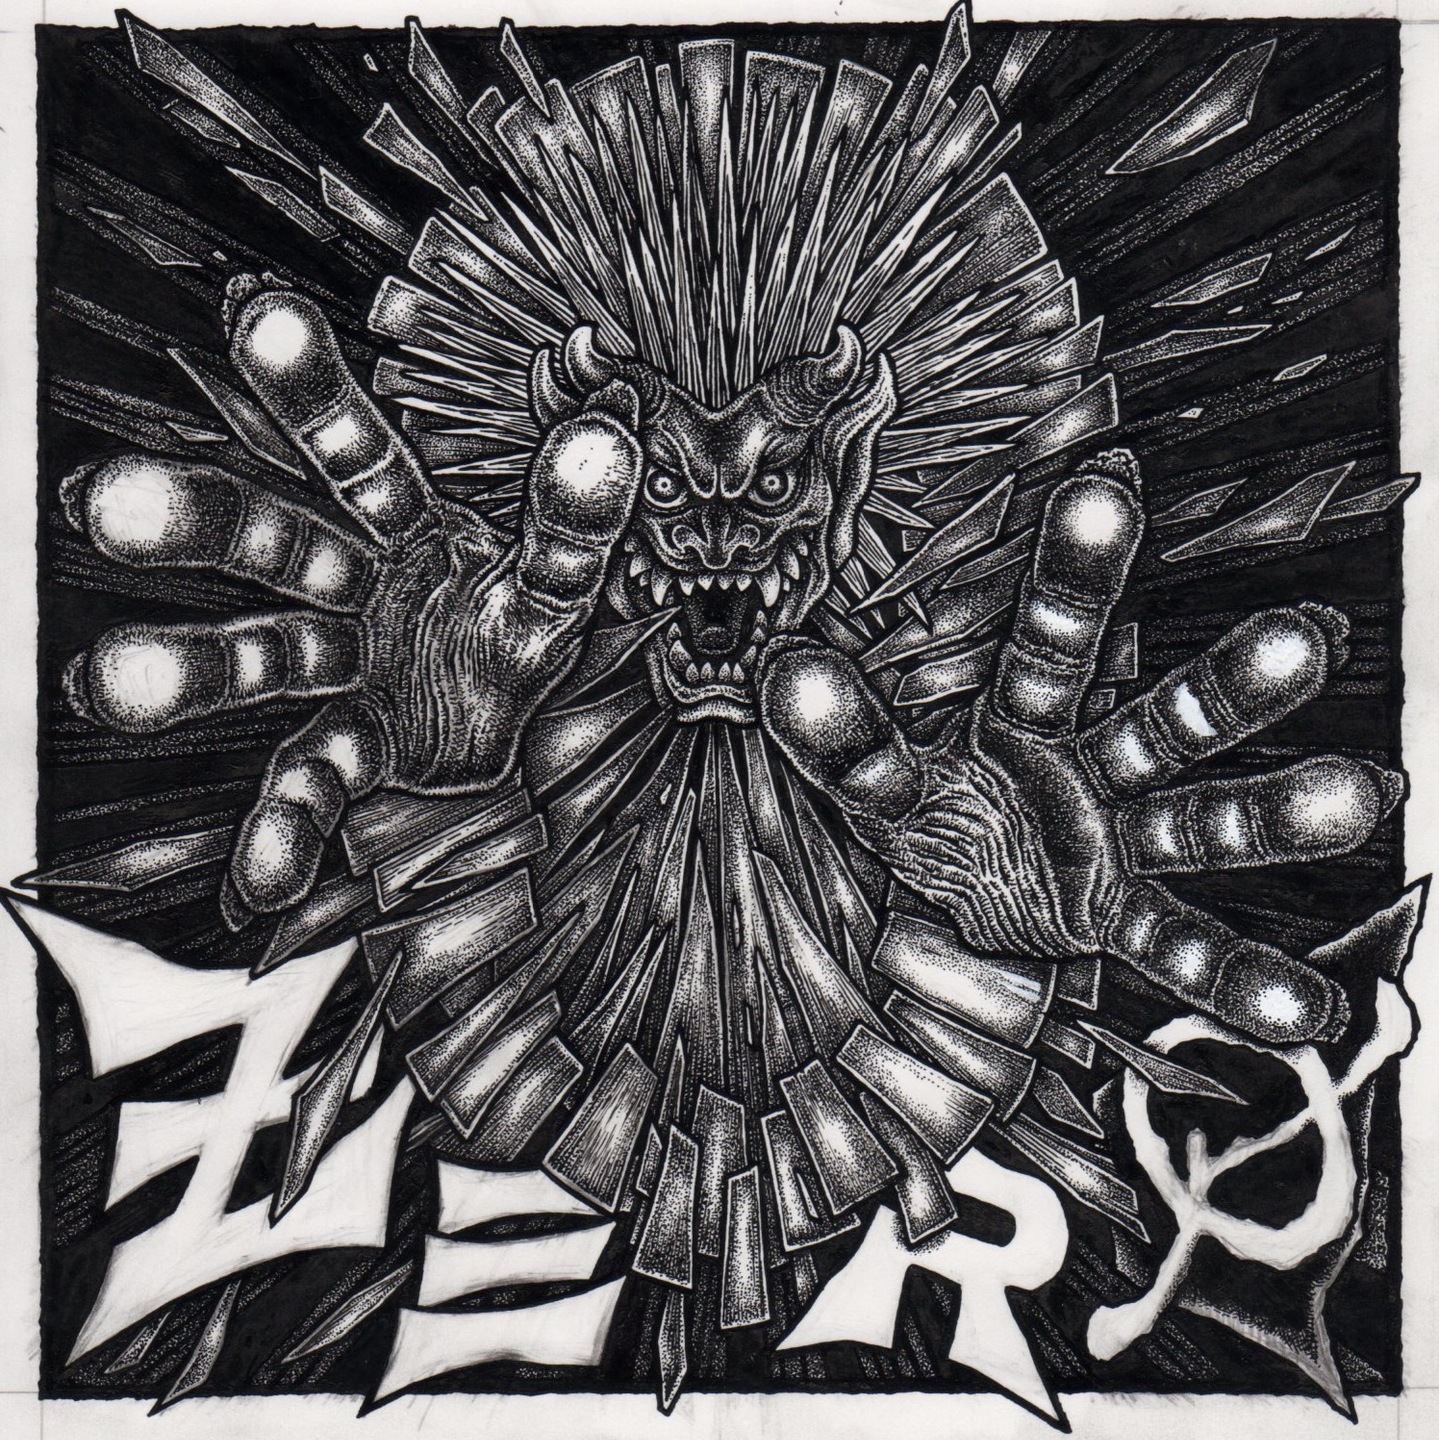 ZERO - Zero LP